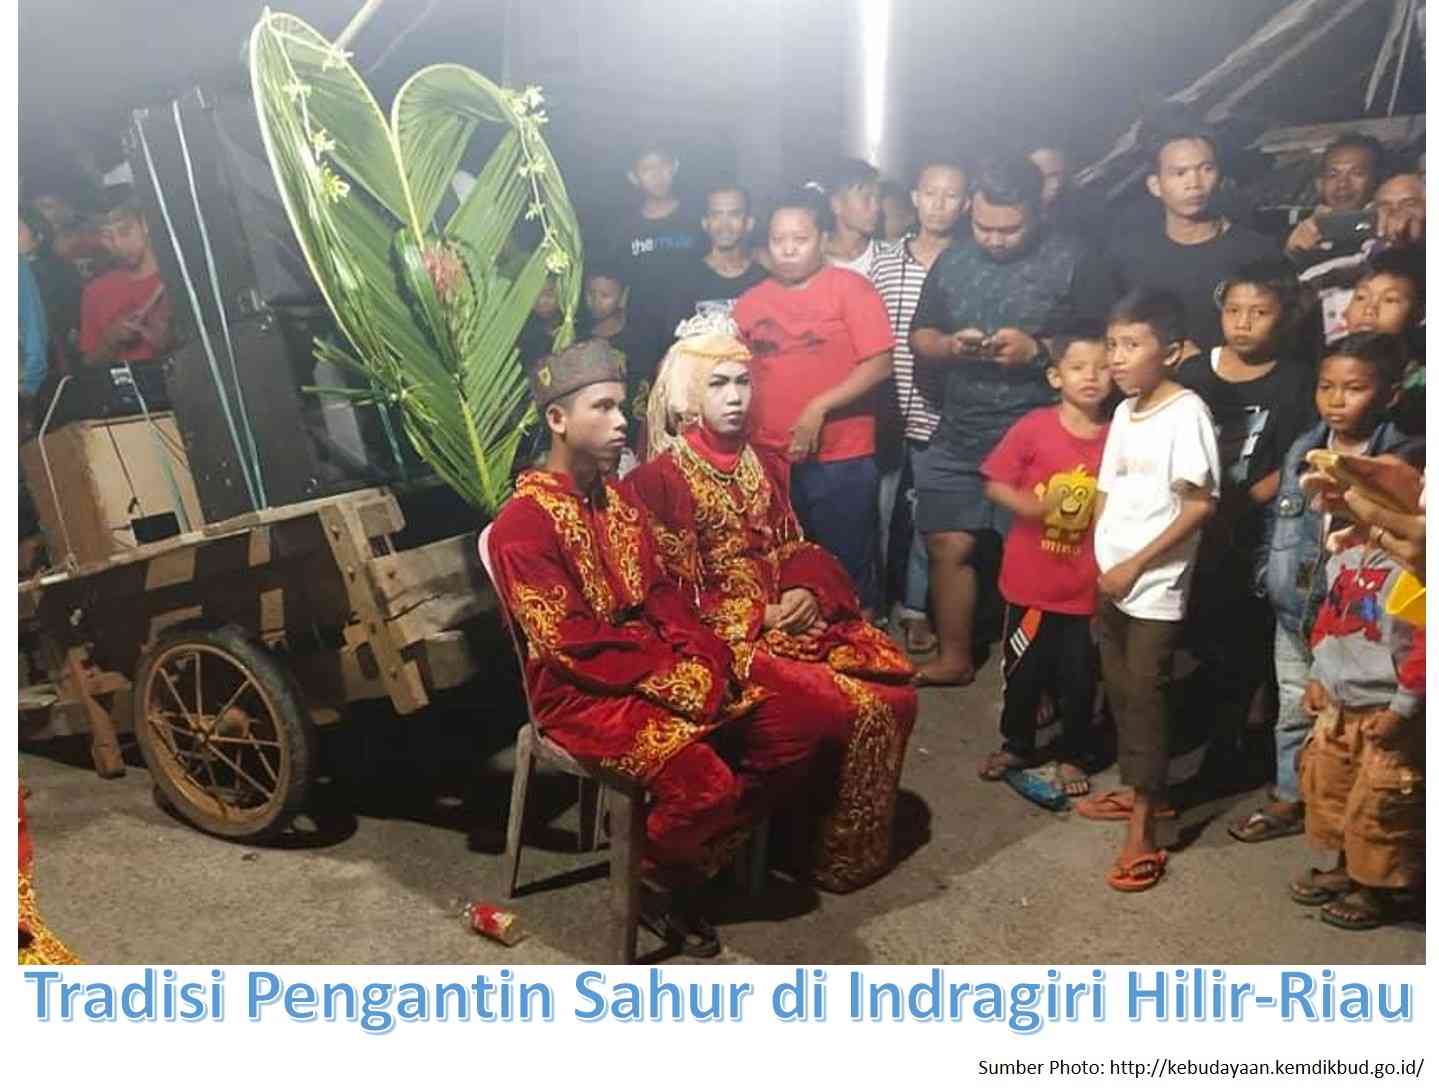 Image:  Tradisi Pengantin Sahur yang Unik di Indragiri Hilir-Riau (Sumber Photo: kebudayaan.kemdikbud.go.id)